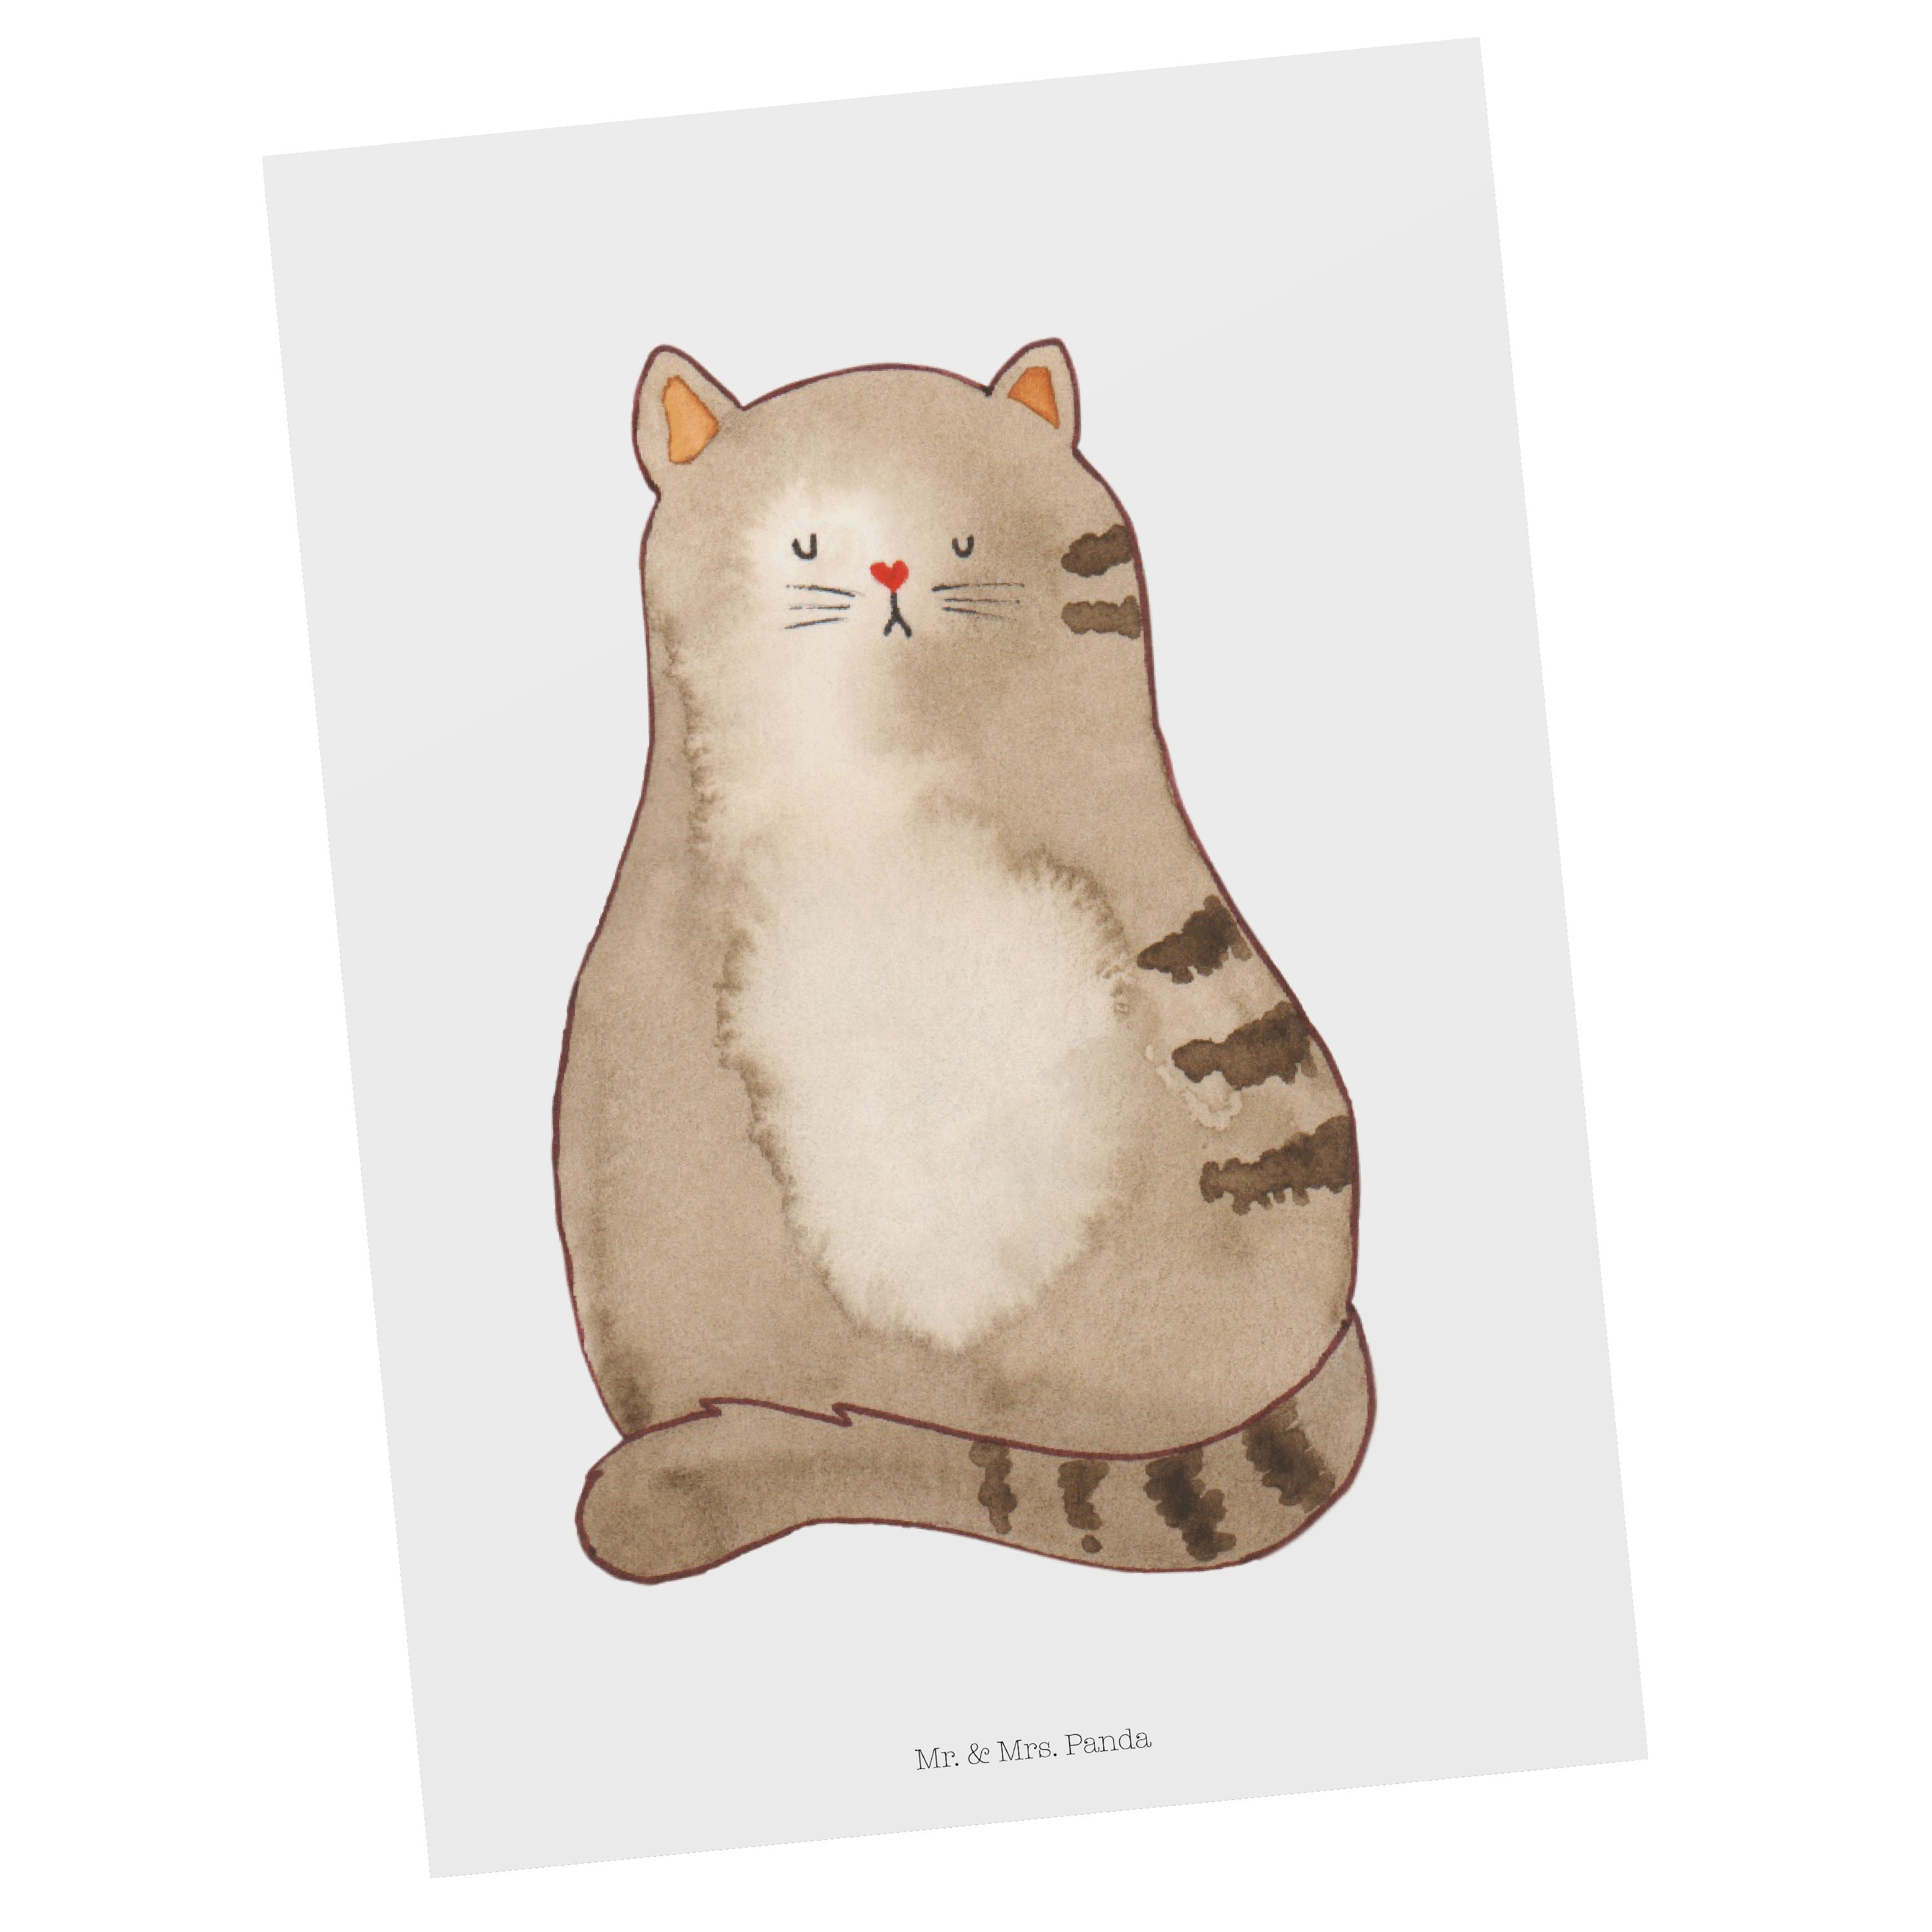 Mr. & Mrs. Panda sitzend Katzenmoti Ansichtskarte, Postkarte - Katze Geschenk, Weiß - flauschig